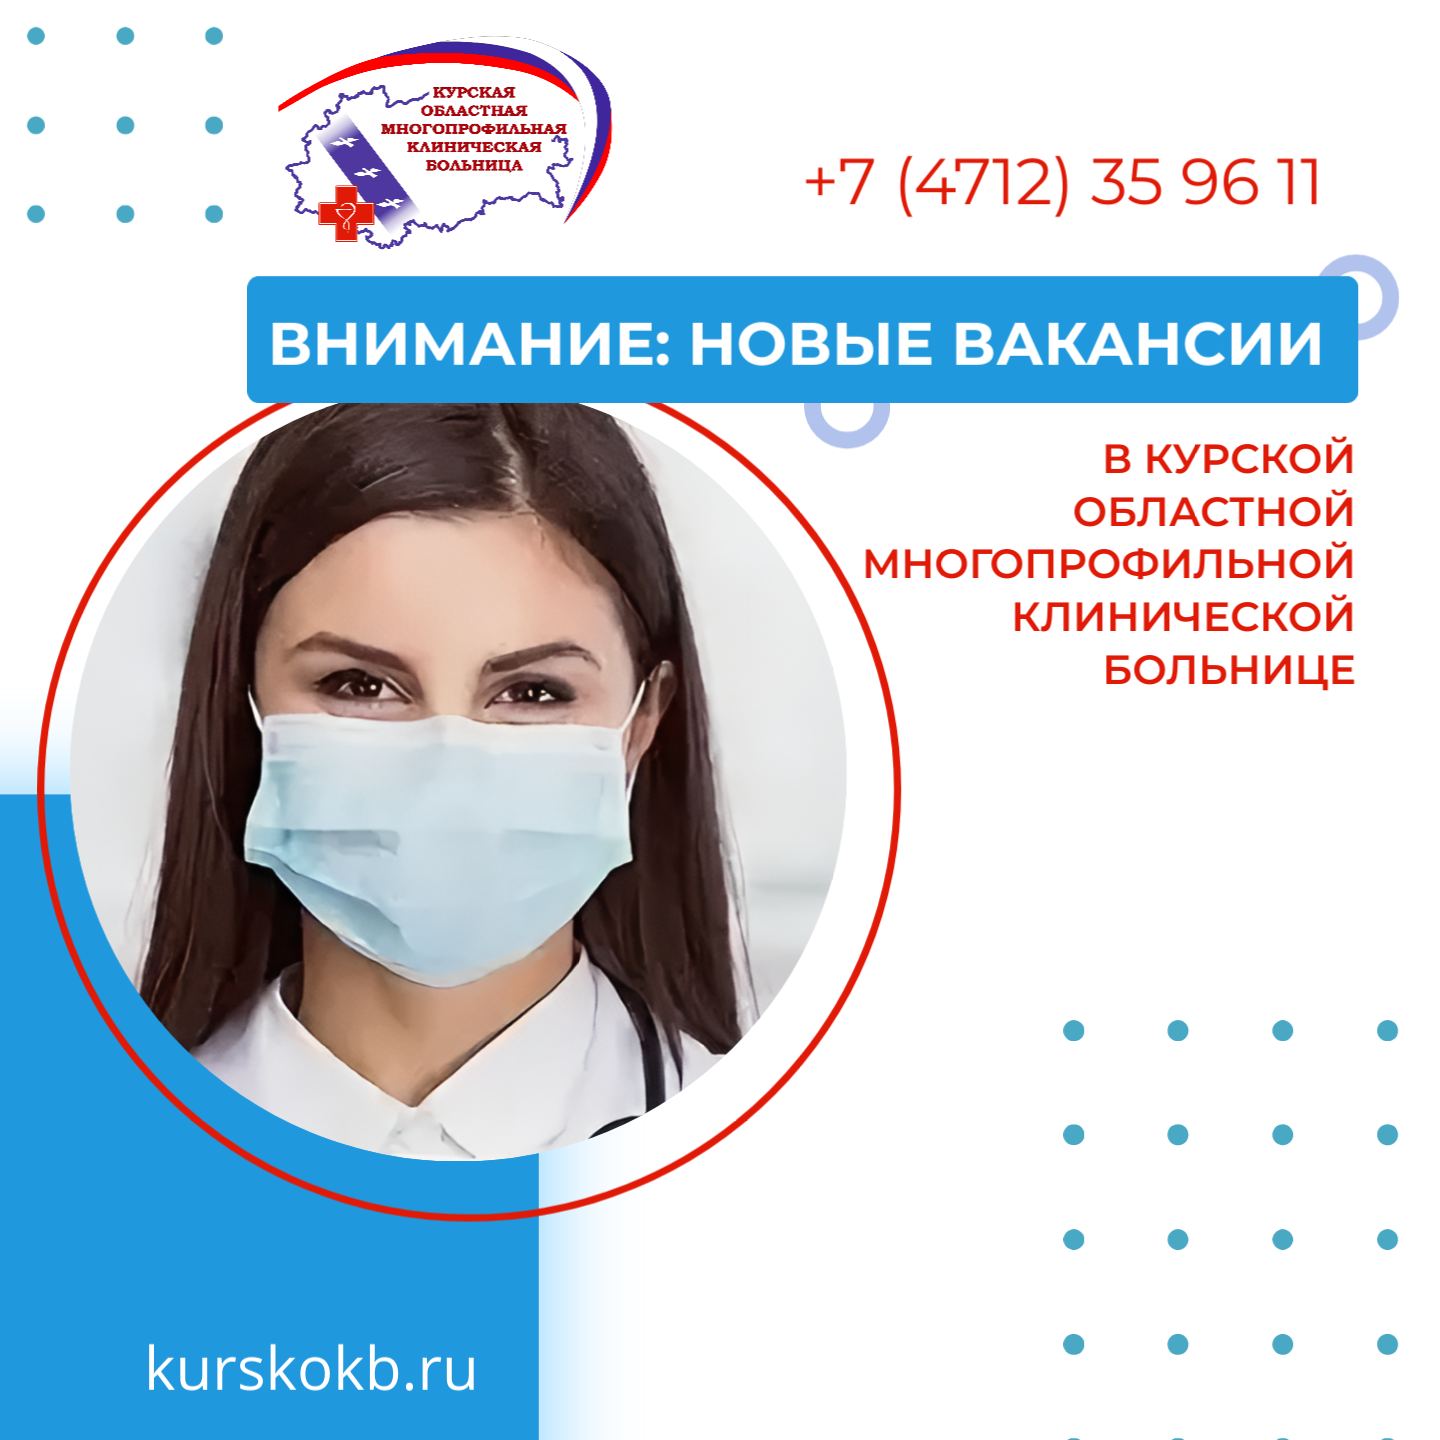 Внимание: актуальные вакансии в Курской областной многопрофильной клинической больнице